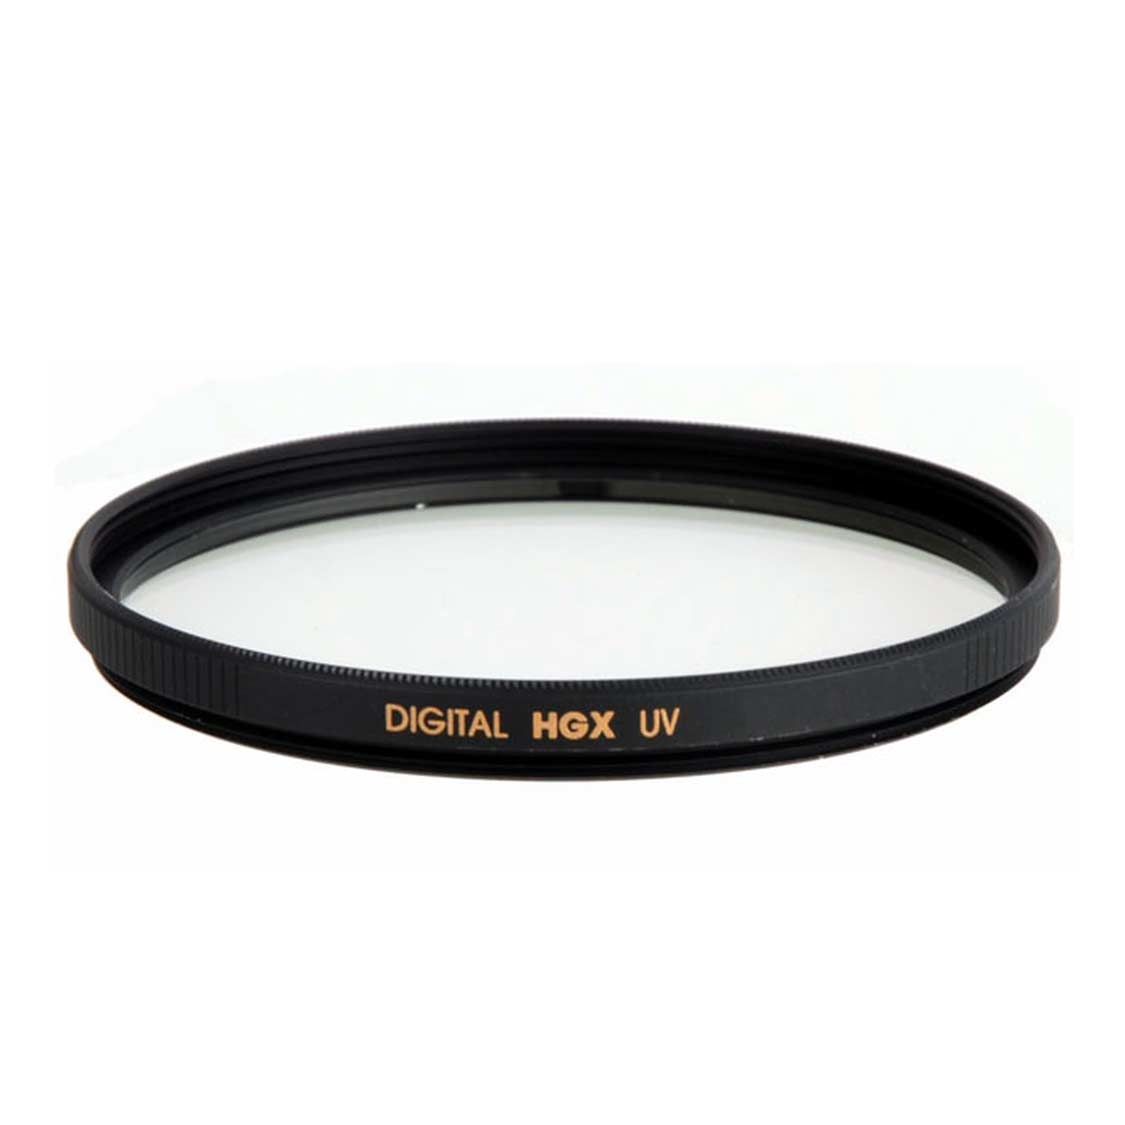 Promaster 105mm Digital HGX Ultraviolet (UV) Filter